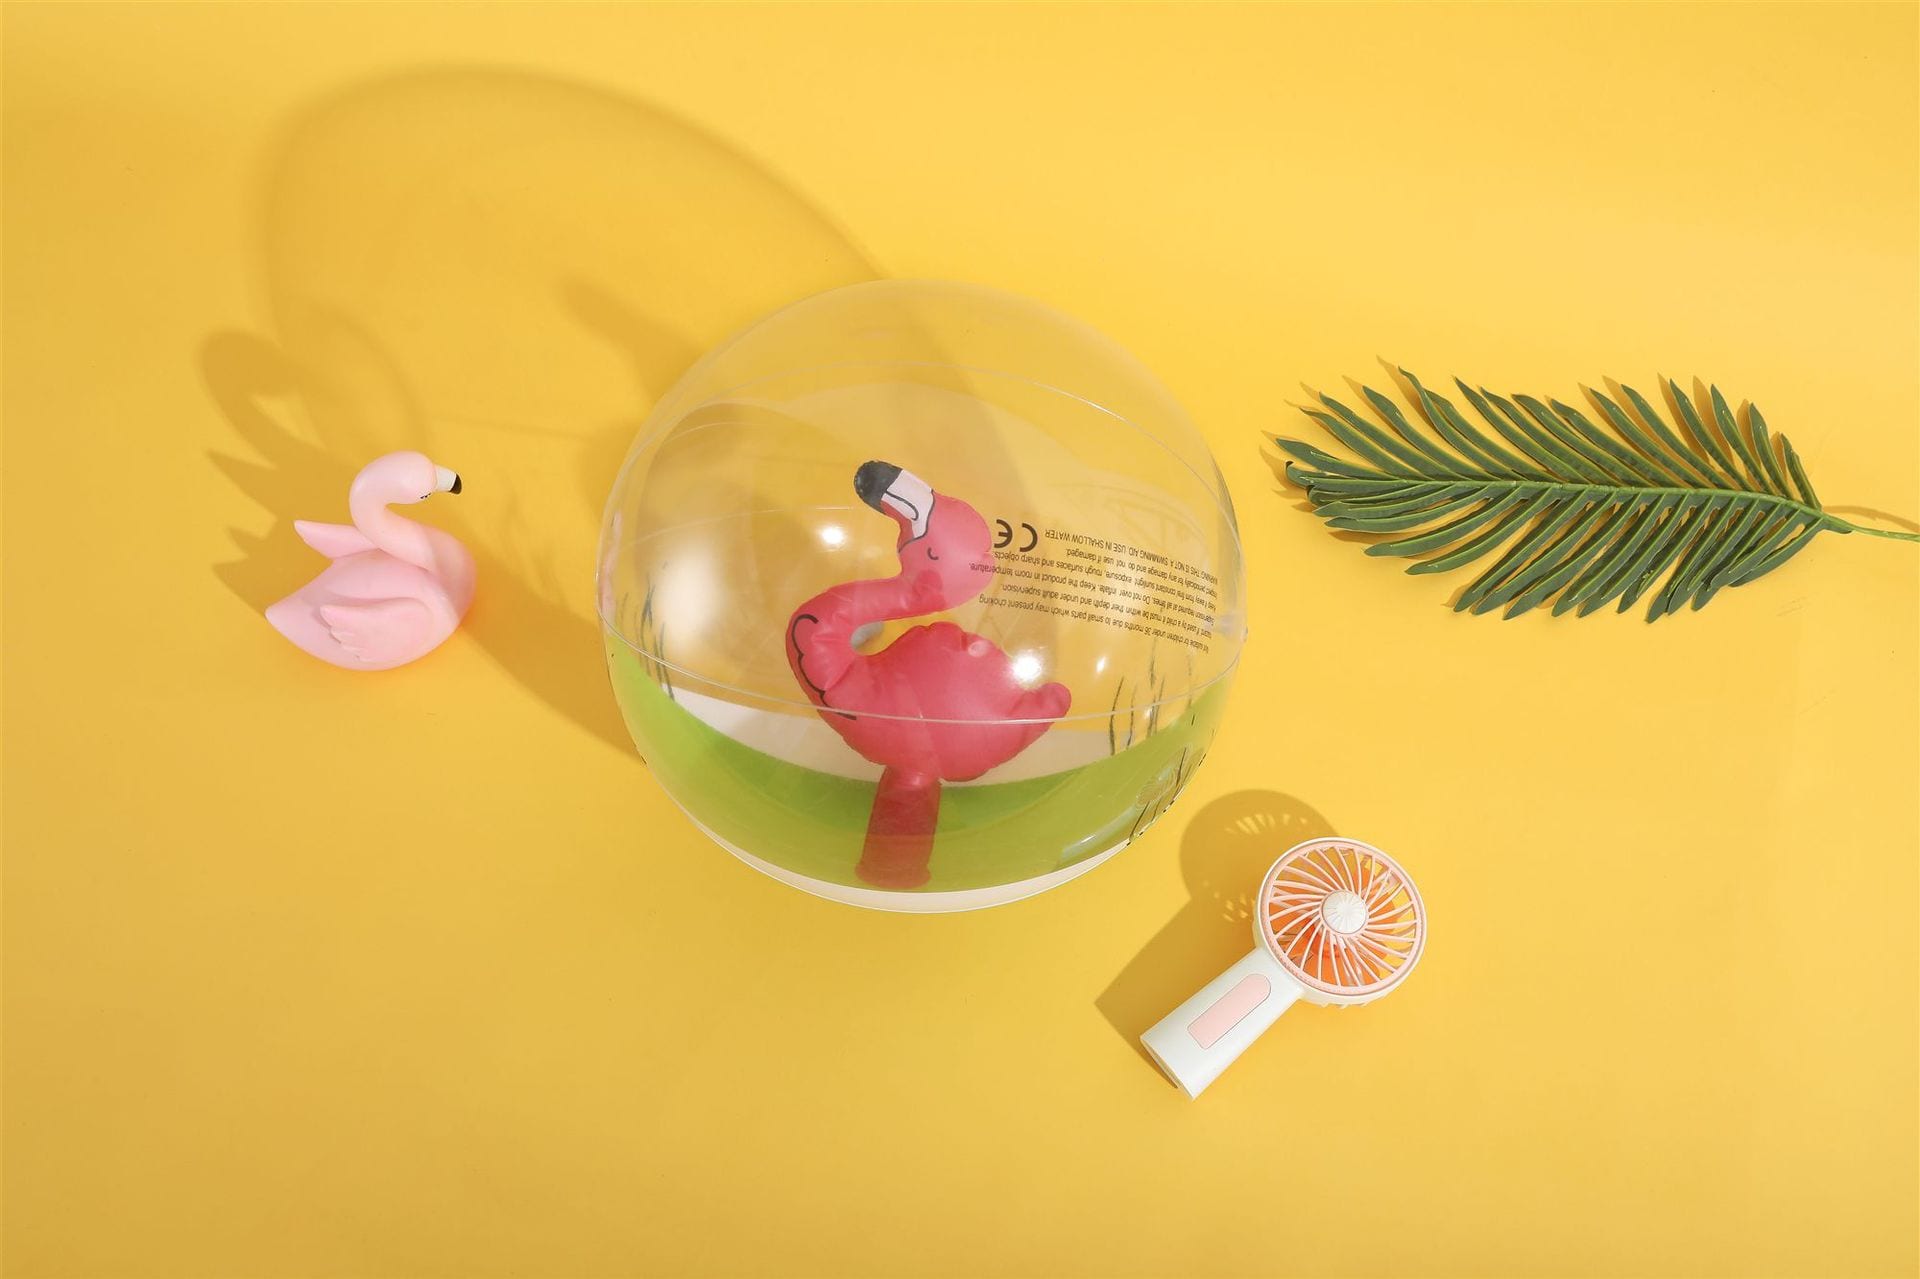 Пляжный мяч с надувным внутри фламинго фото